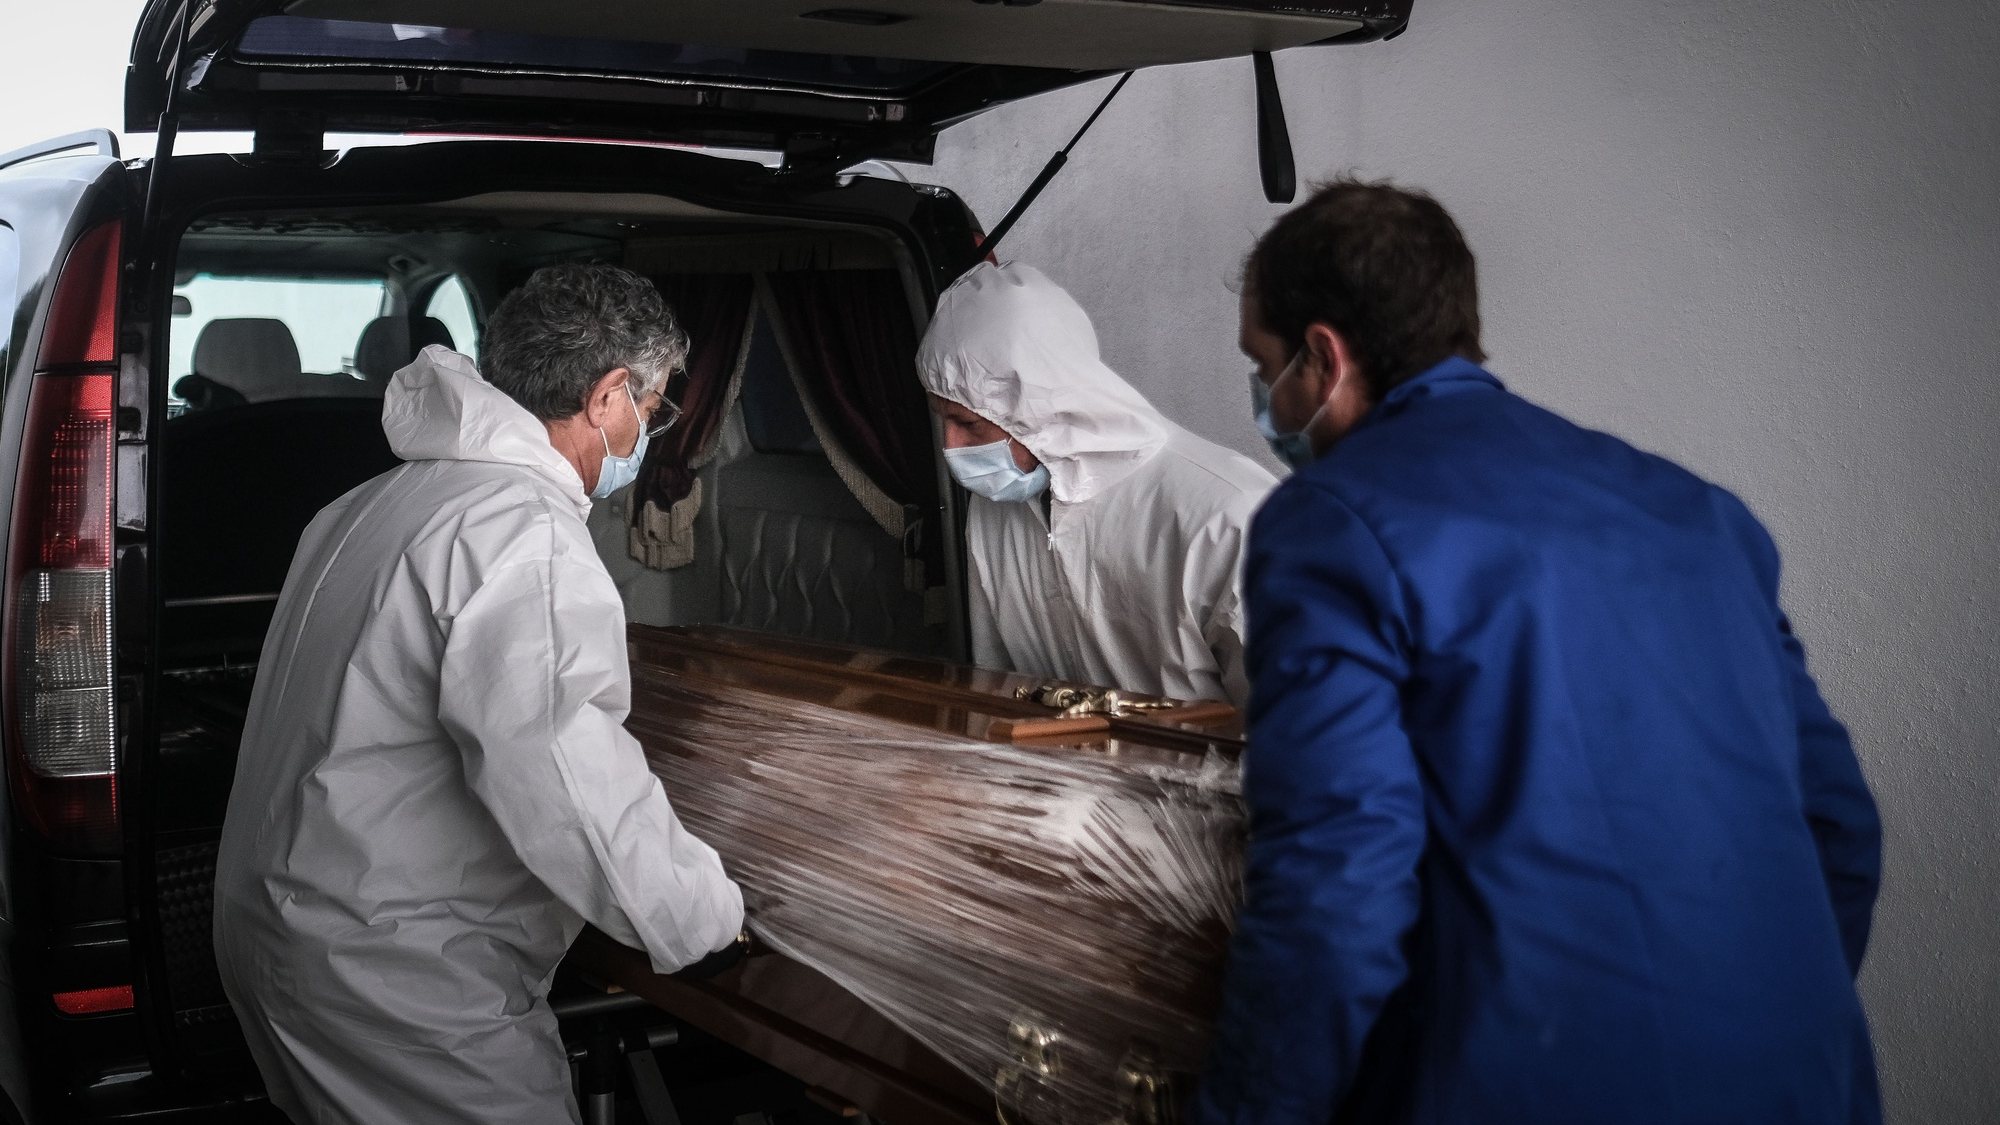 (13/23) Funcionários de uma agência funerária seguram o caixão de uma mulher que morreu vítima de covid-19, no Complexo Funerário Casal de Cambra, Sintra, 30 de janeiro de 2021. Esta semana Portugal ultrapassou as 300 mortes diárias por covid-19, um novo máximo desde o início da pandemia. (ACOMPANHA TEXTO DA LUSA DO DIA 30 DE JANEIRO DE 2021). MÁRIO CRUZ/LUSA